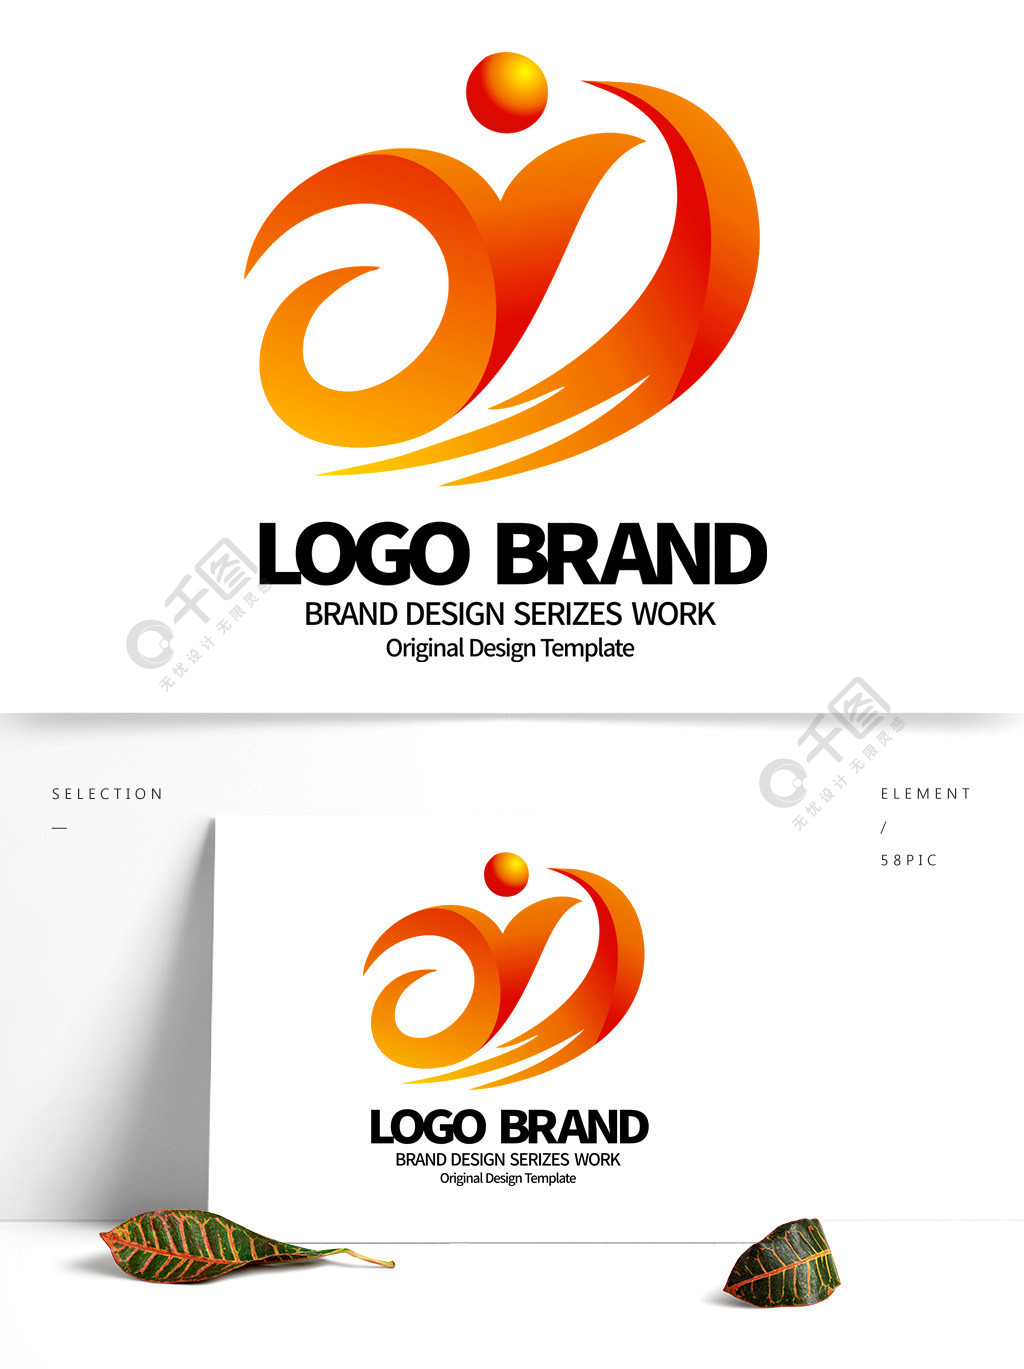 创意红黄飘带y字母科技企业logo设计矢量图免费下载_cdr格式_2000像素